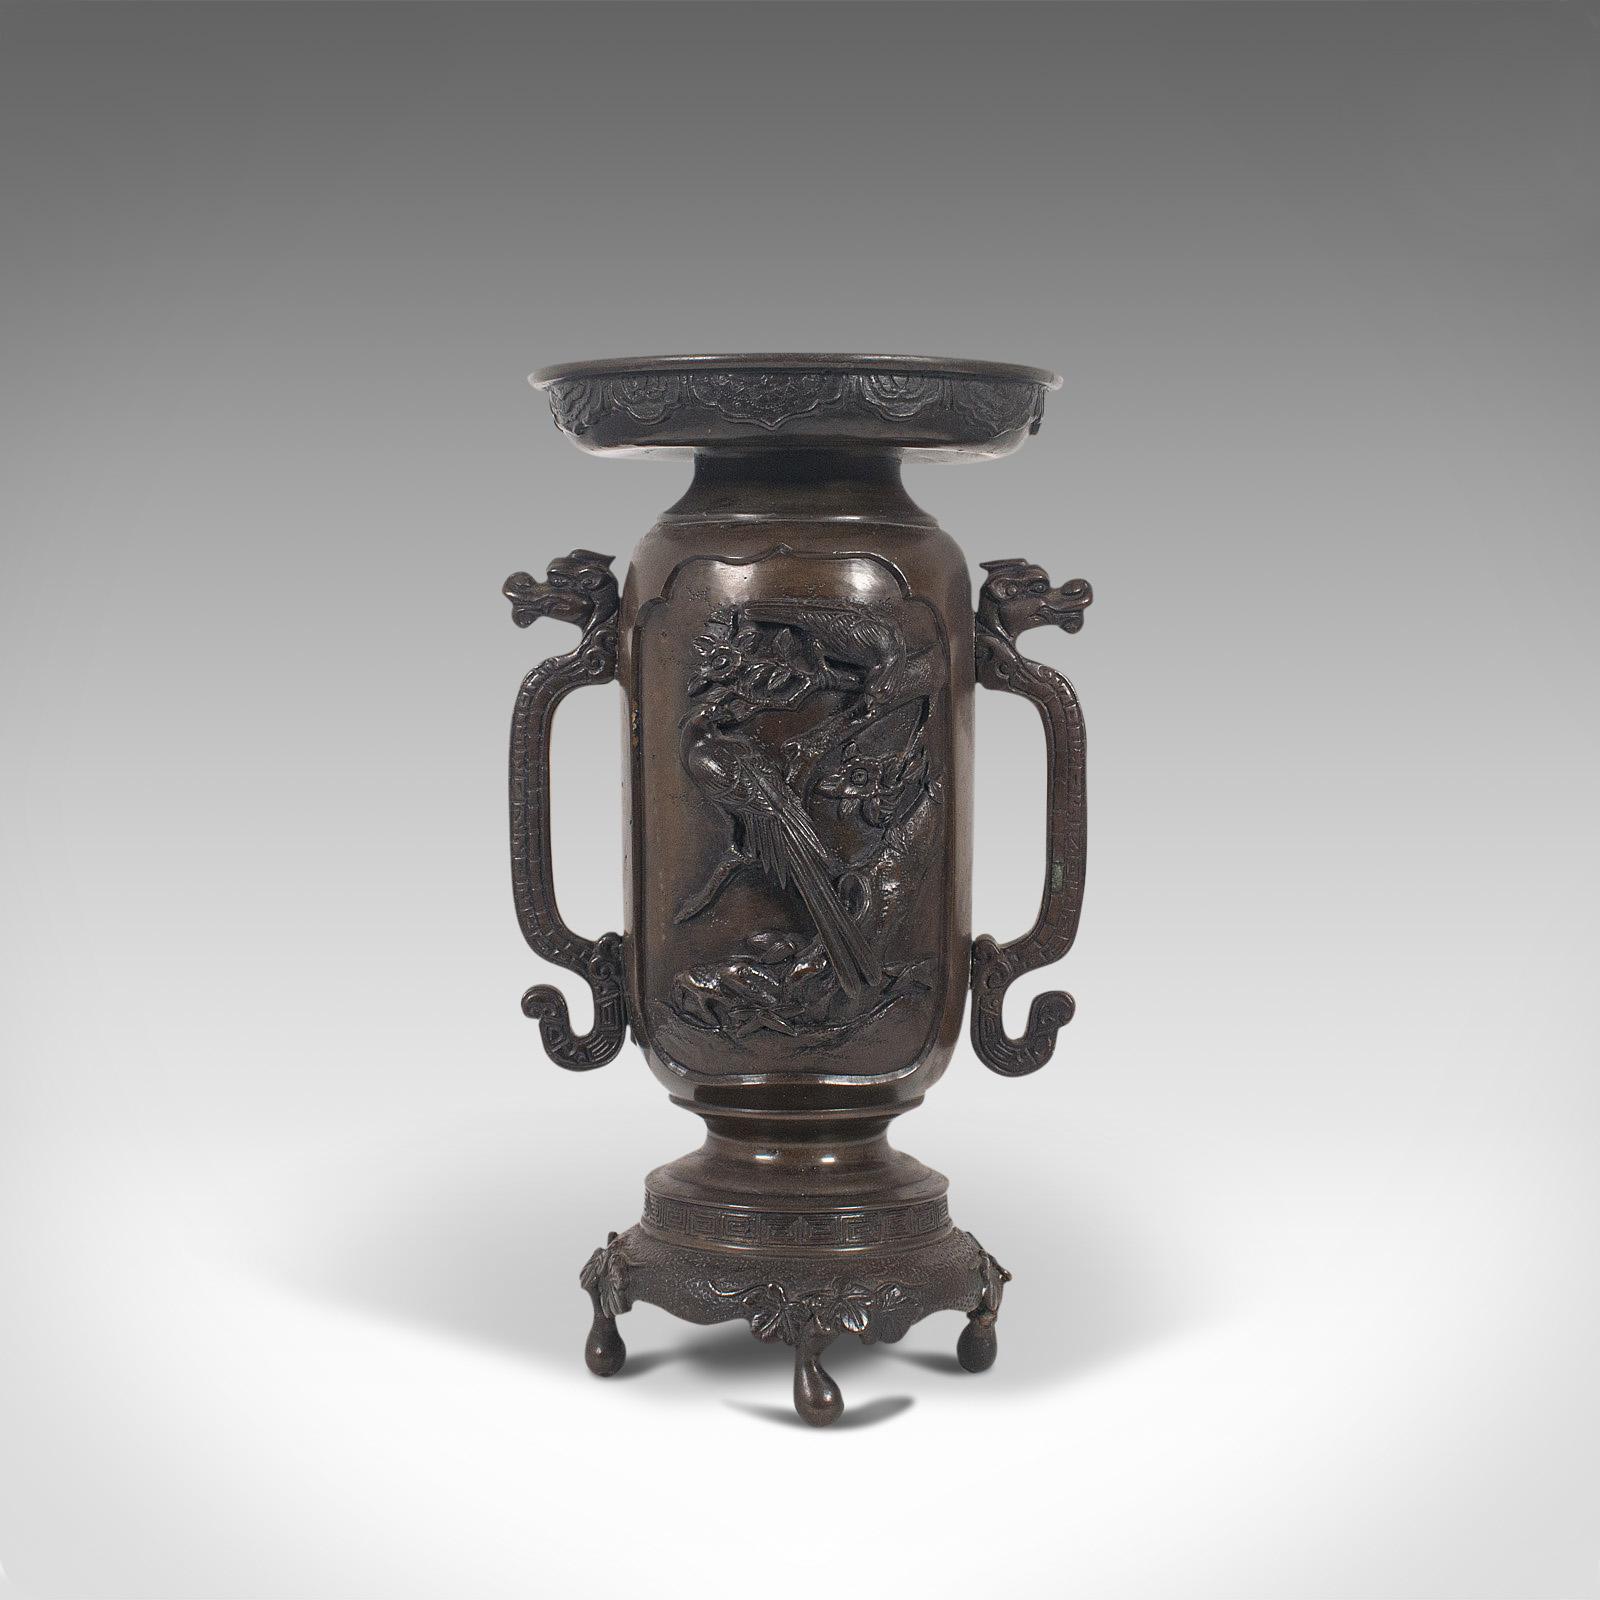 Il s'agit d'un ancien vase décoratif à deux anses. Vase japonais en bronze de la période Meiji, datant de la fin du XIXe siècle, vers 1900.

Un vase impressionnant avec des détails saisissants
Présentant une patine vieillie souhaitable par le